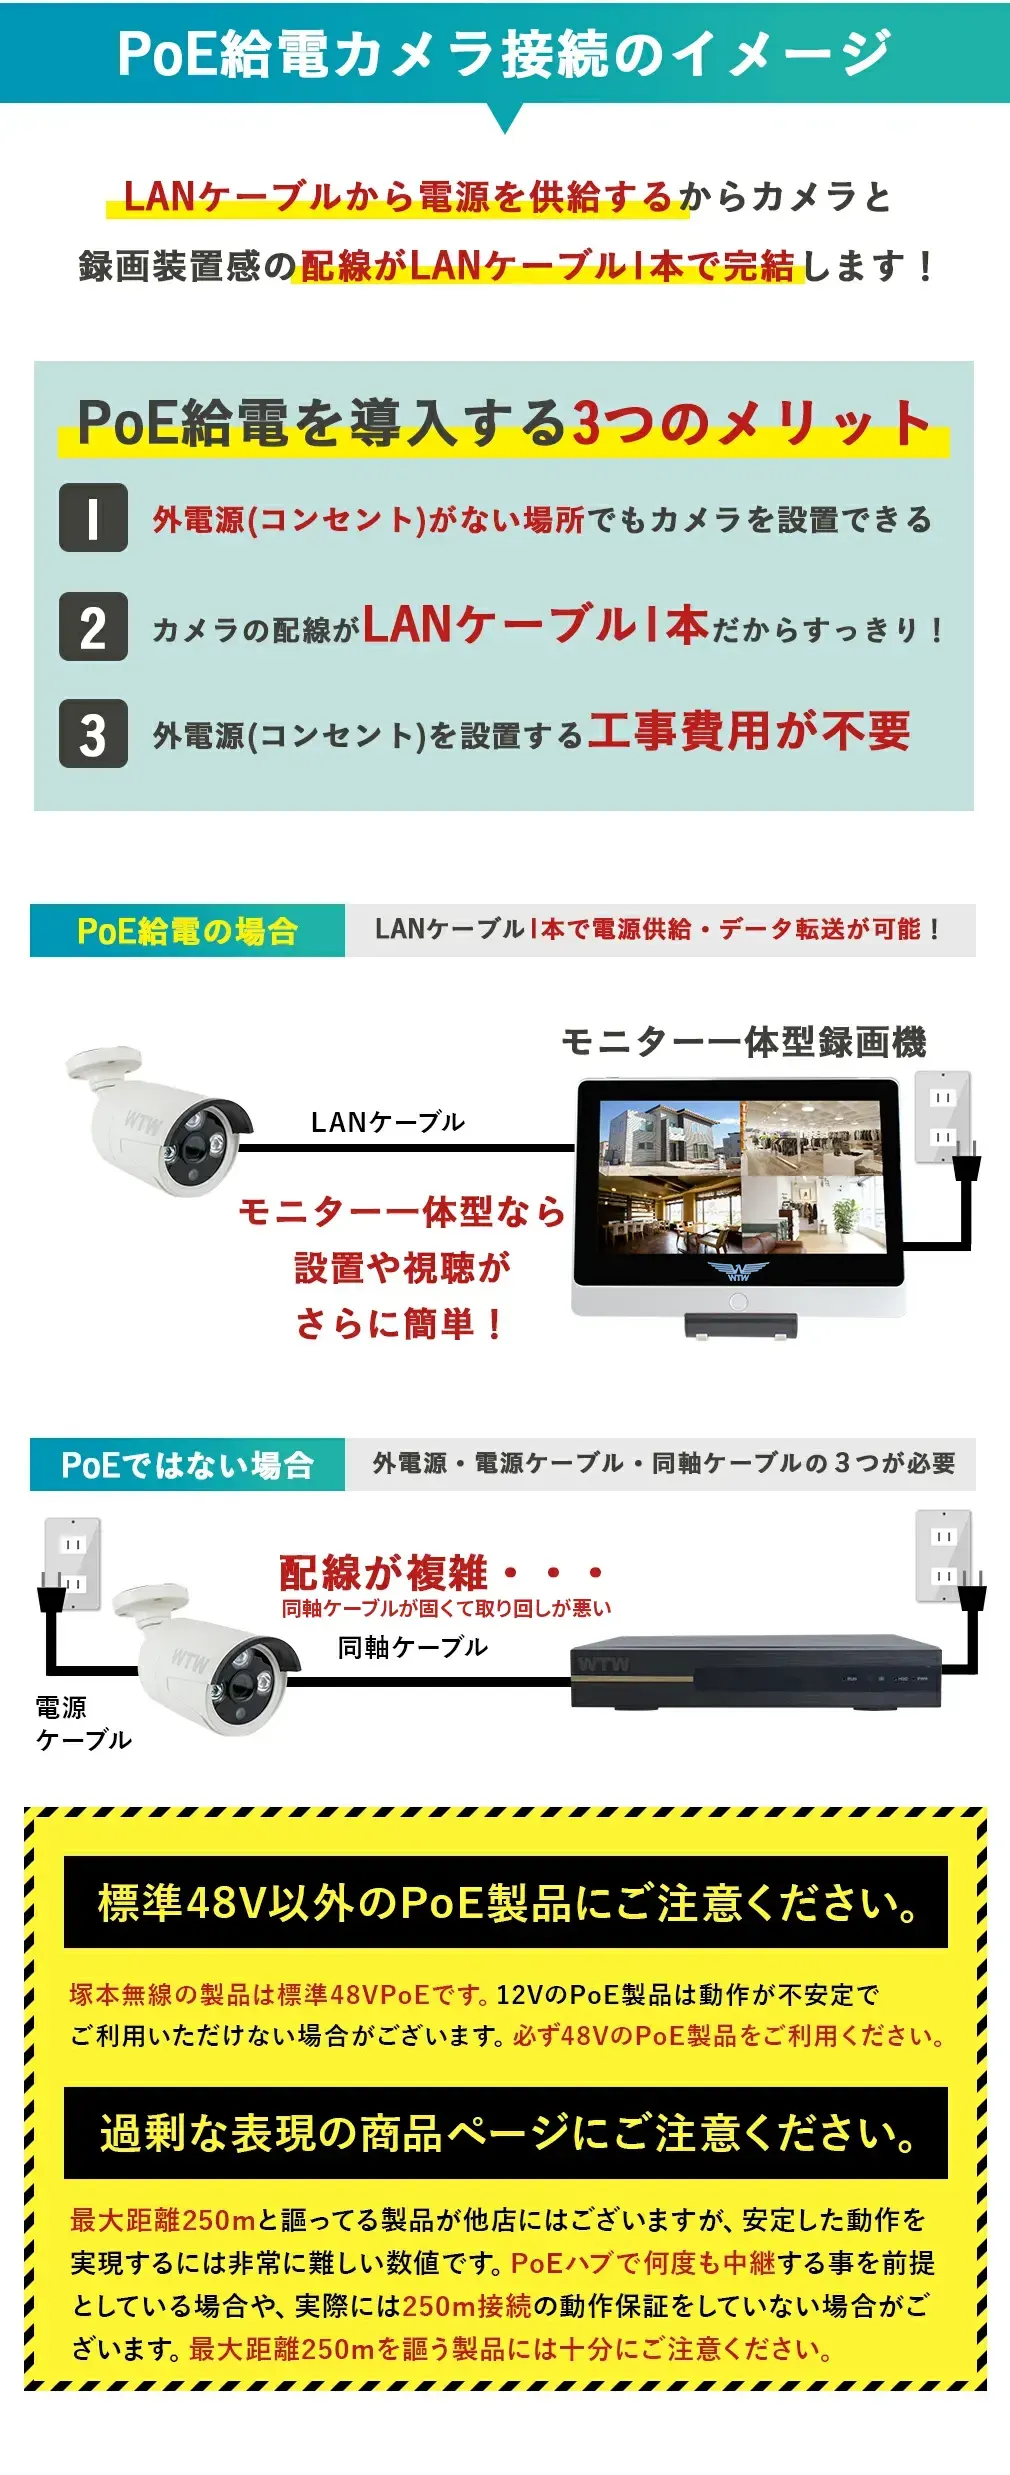 500万画素 ワンケーブルカメラセット 簡単接続 4台カメラ × 8ch録画機(1TB搭載)